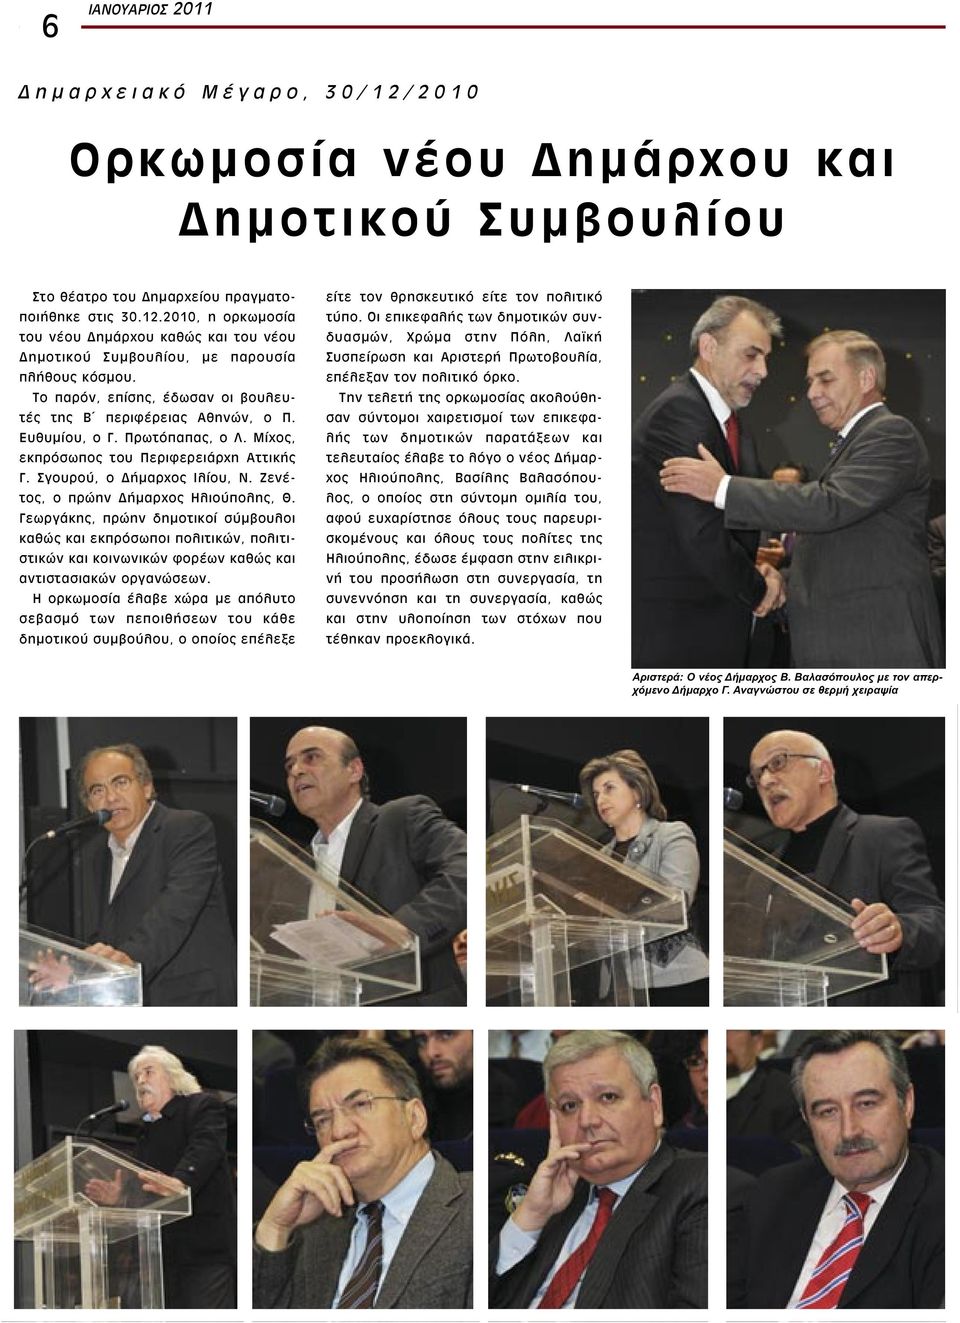 Ζενέτος, ο πρώην Δήμαρχος Ηλιούπολης, Θ. Γεωργάκης, πρώην δημοτικοί σύμβουλοι καθώς και εκπρόσωποι πολιτικών, πολιτιστικών και κοινωνικών φορέων καθώς και αντιστασιακών οργανώσεων.